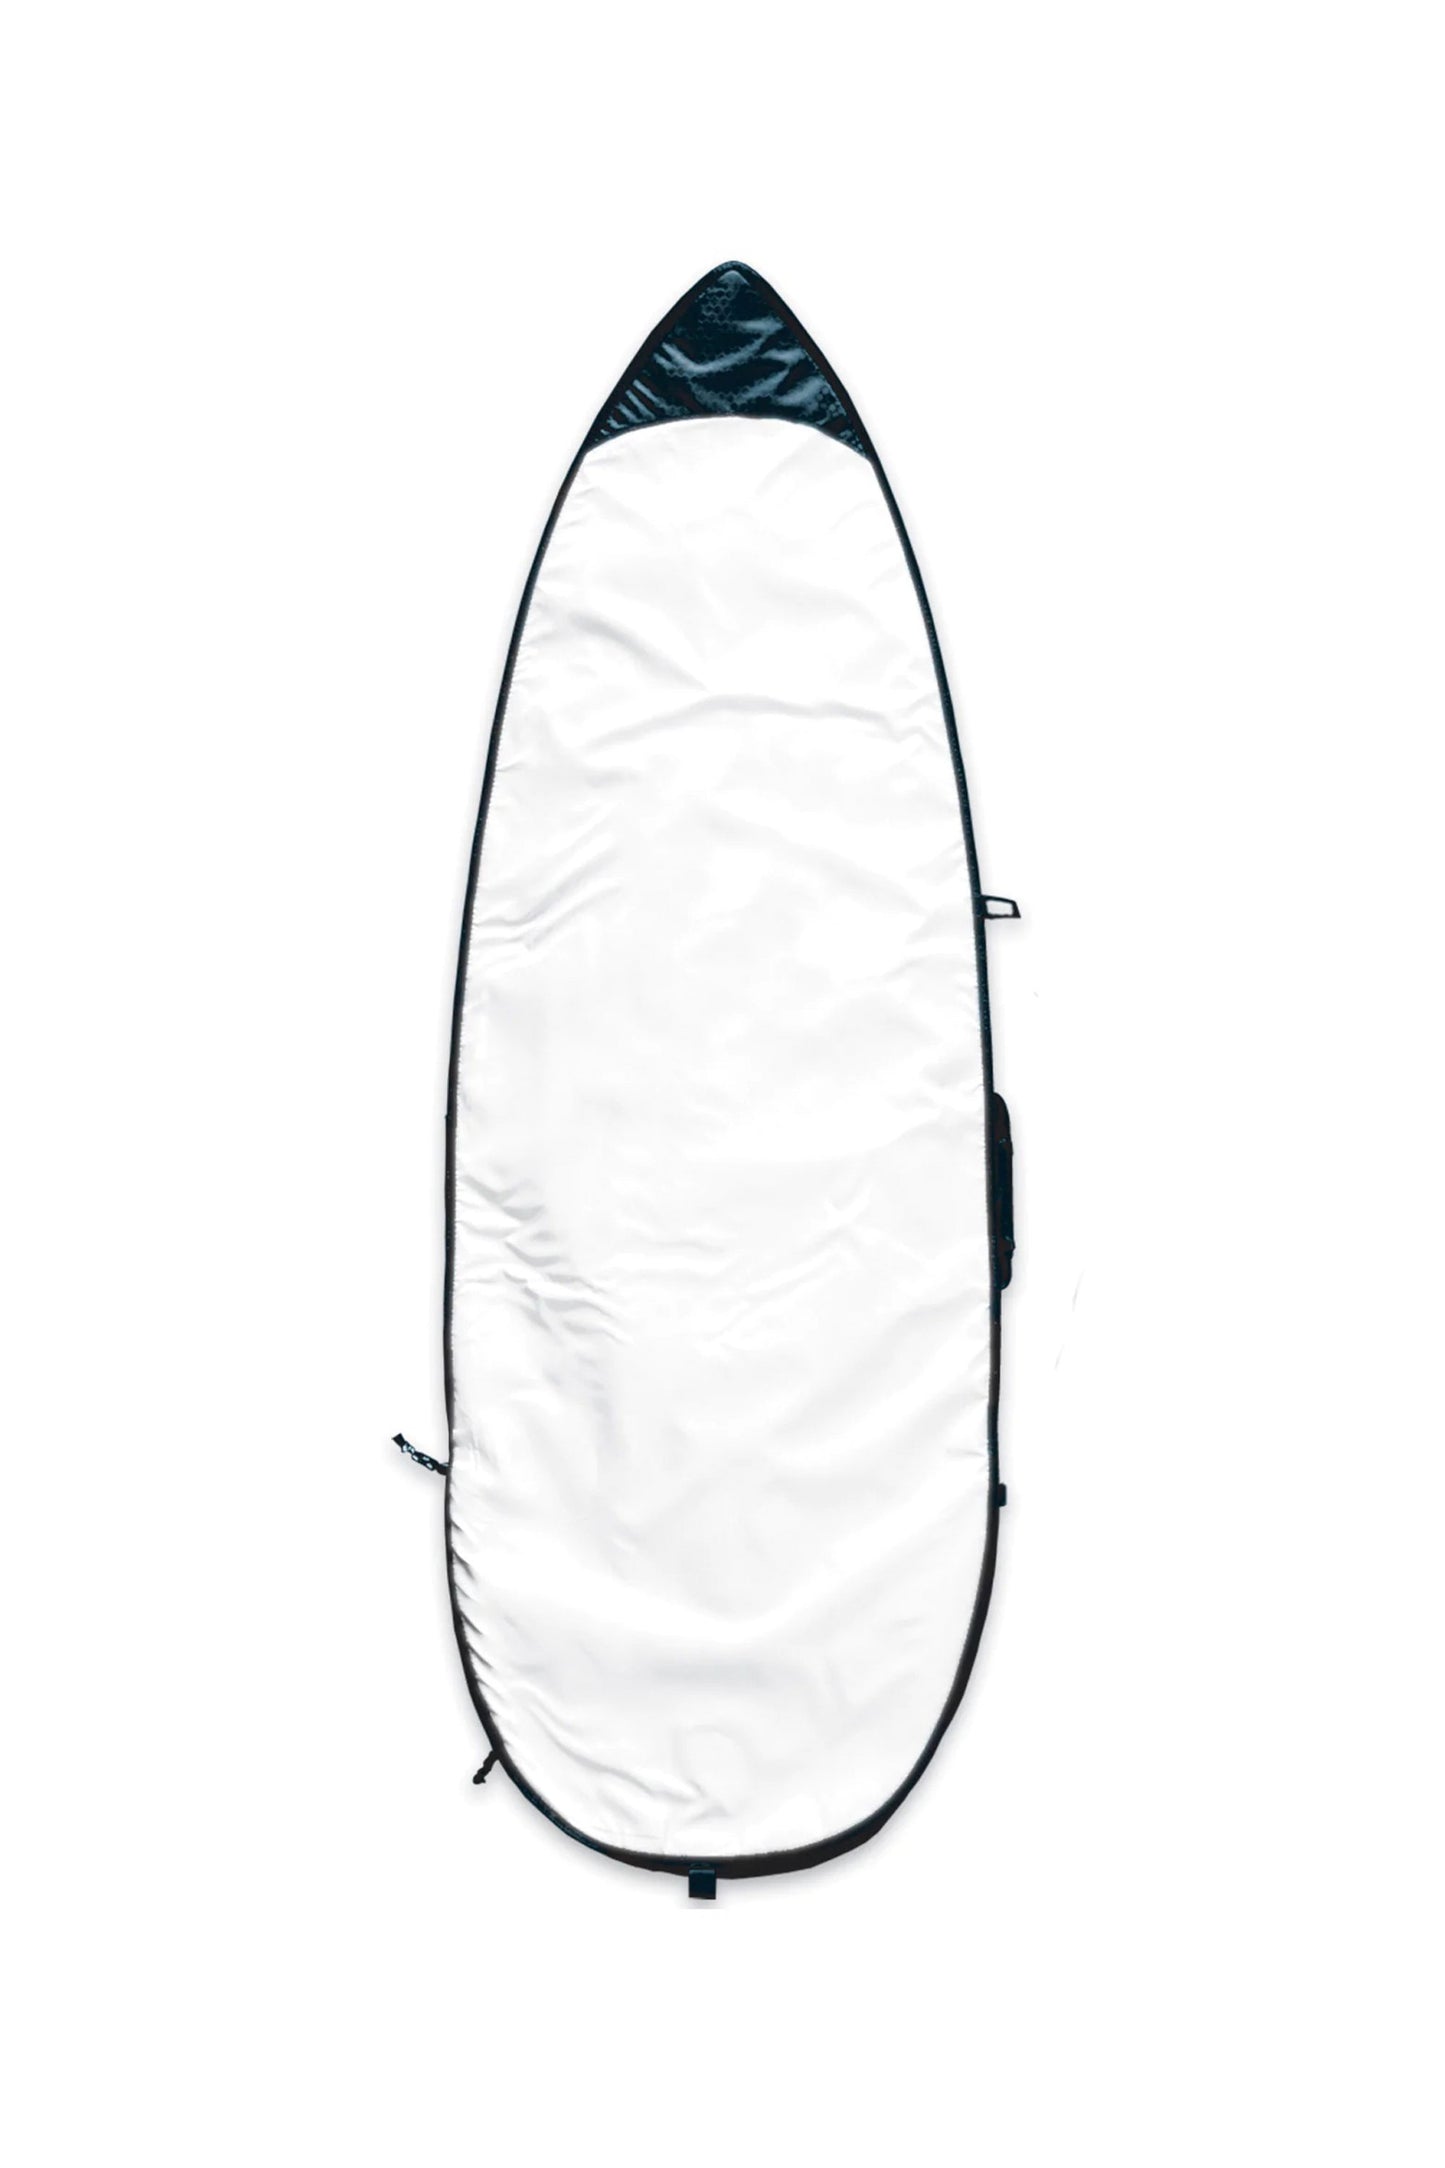 Pukas-Surf-Shop-channel-islands-boardbag-Feather-Lite-Bag-6.4